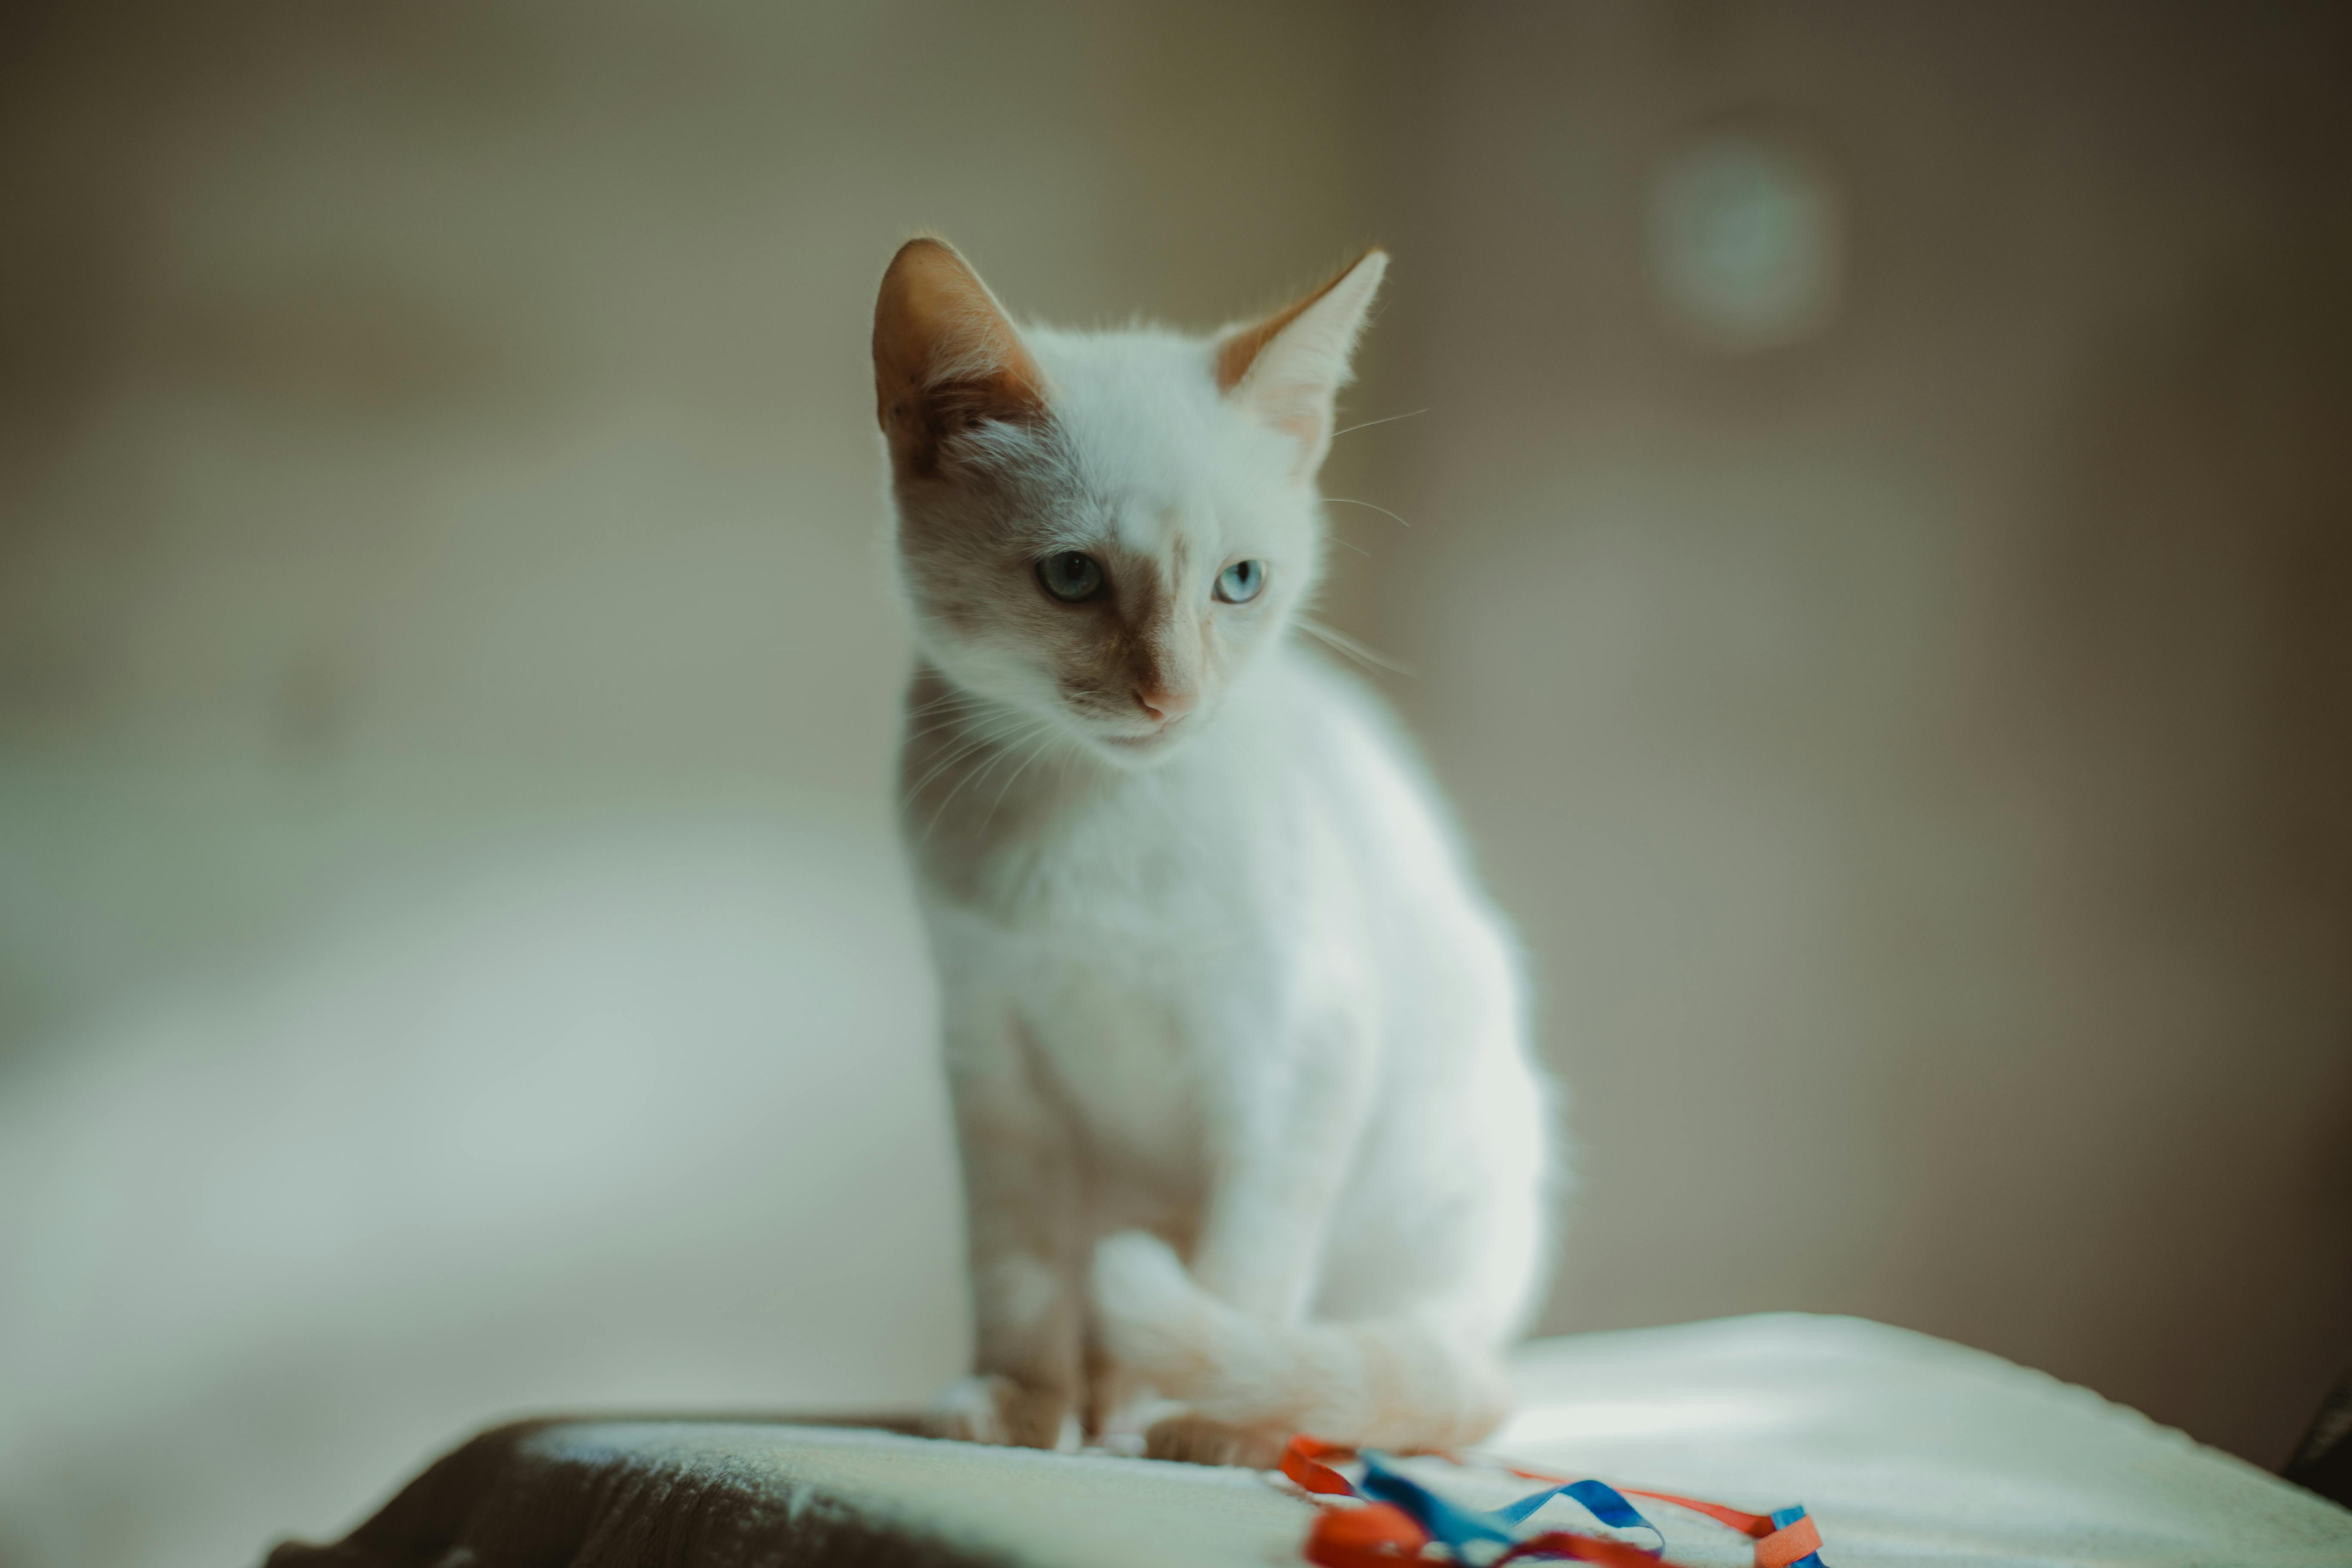 Mèo trắng là một loài động vật dễ thương và đặc biệt quý giá, có bộ lông trắng tinh khôi và đôi mắt xanh tím đầy quyến rũ. Hãy xem các hình ảnh của mèo trắng để cảm nhận sự dễ thương và tinh khiết của chúng.